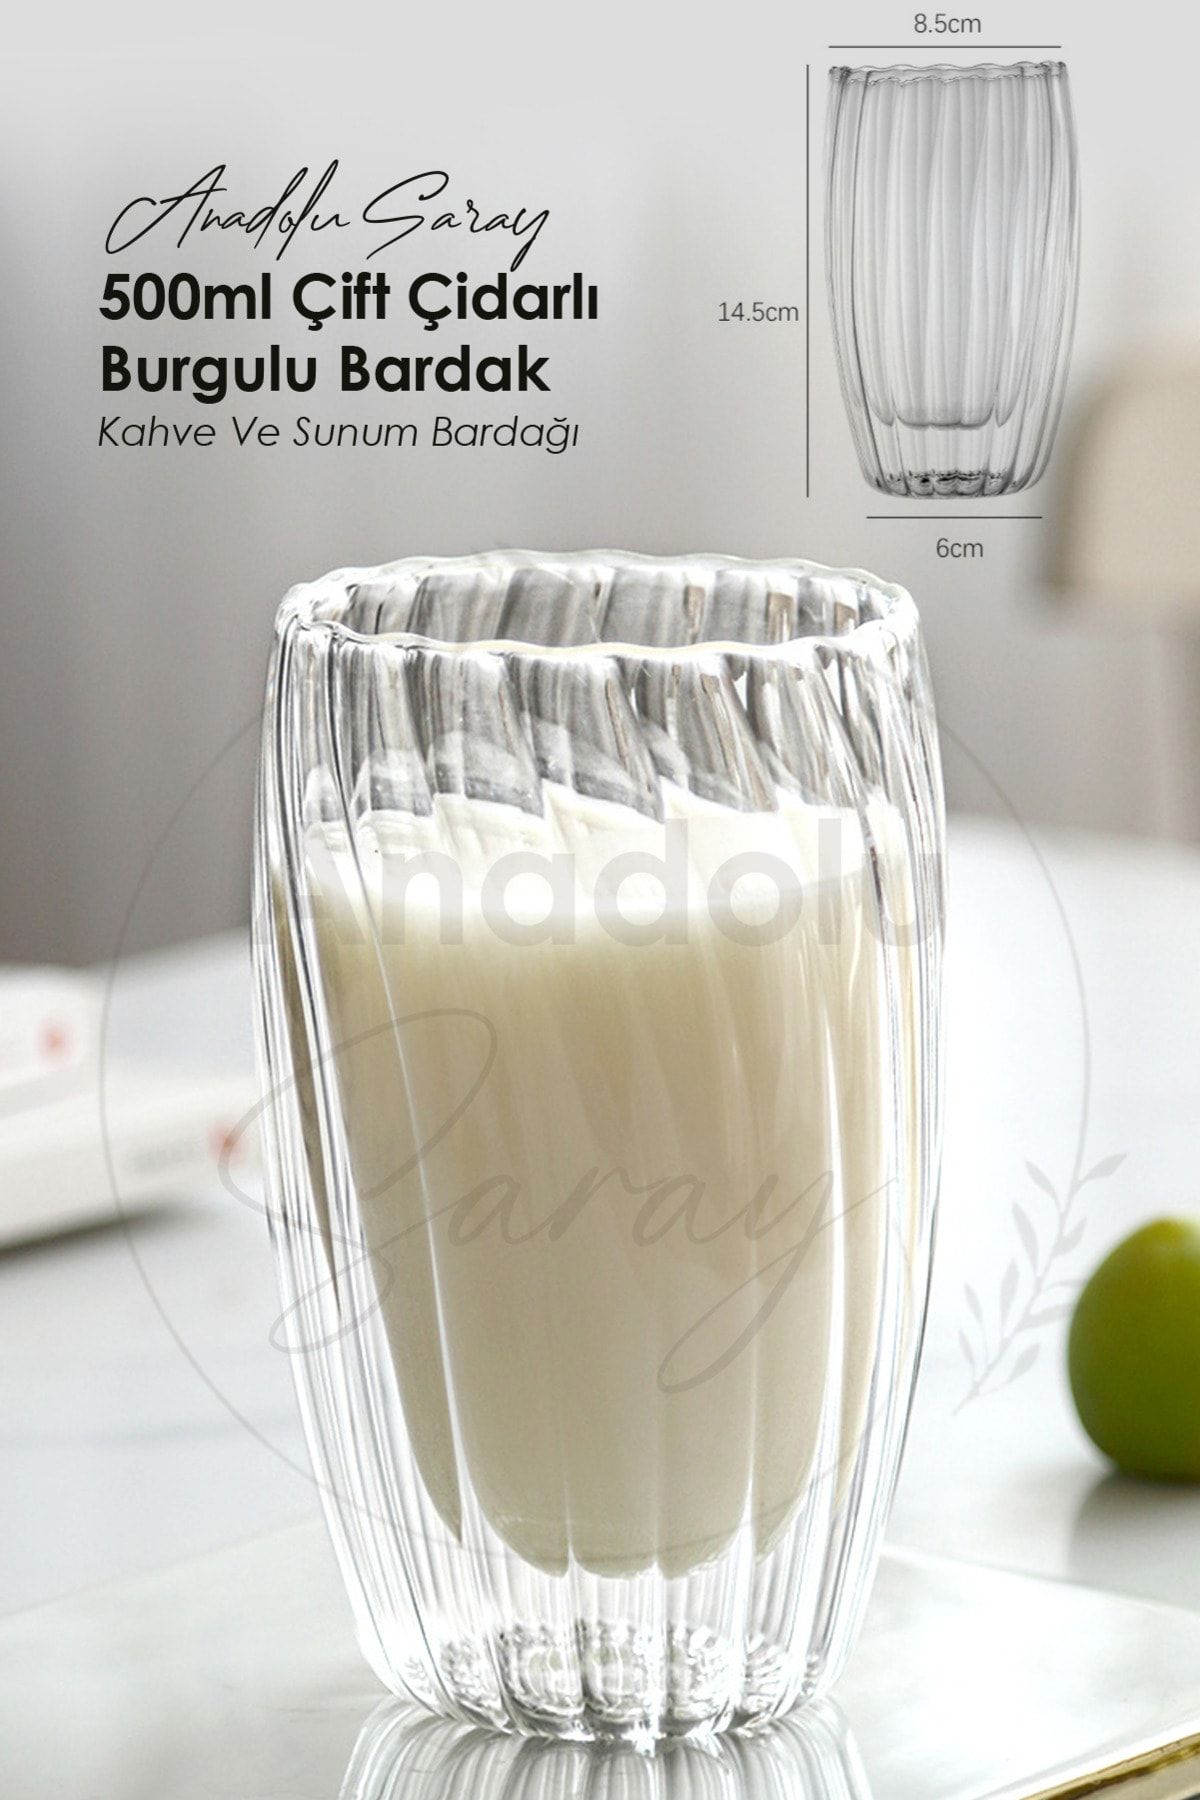 Anadolu Saray Çarşısı Isıya Dayanıklı Borosilikat 500ml Çift Çidarlı Burgulu Bardak | Kahve Ve Sunum Bardağı